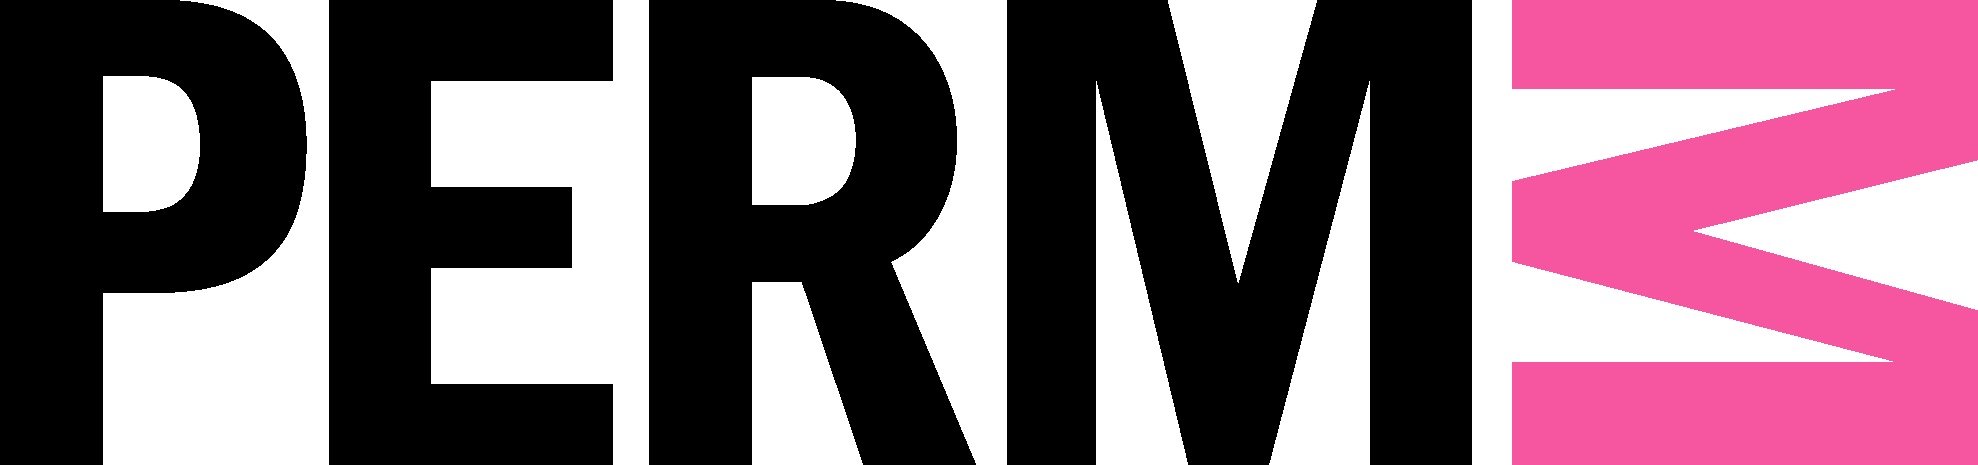 Пермь музей современного искусства логотип. PERMM музей современного искусства Пермь. Пермский музей современного искусства PERMM эмблема. PERMM логотип.